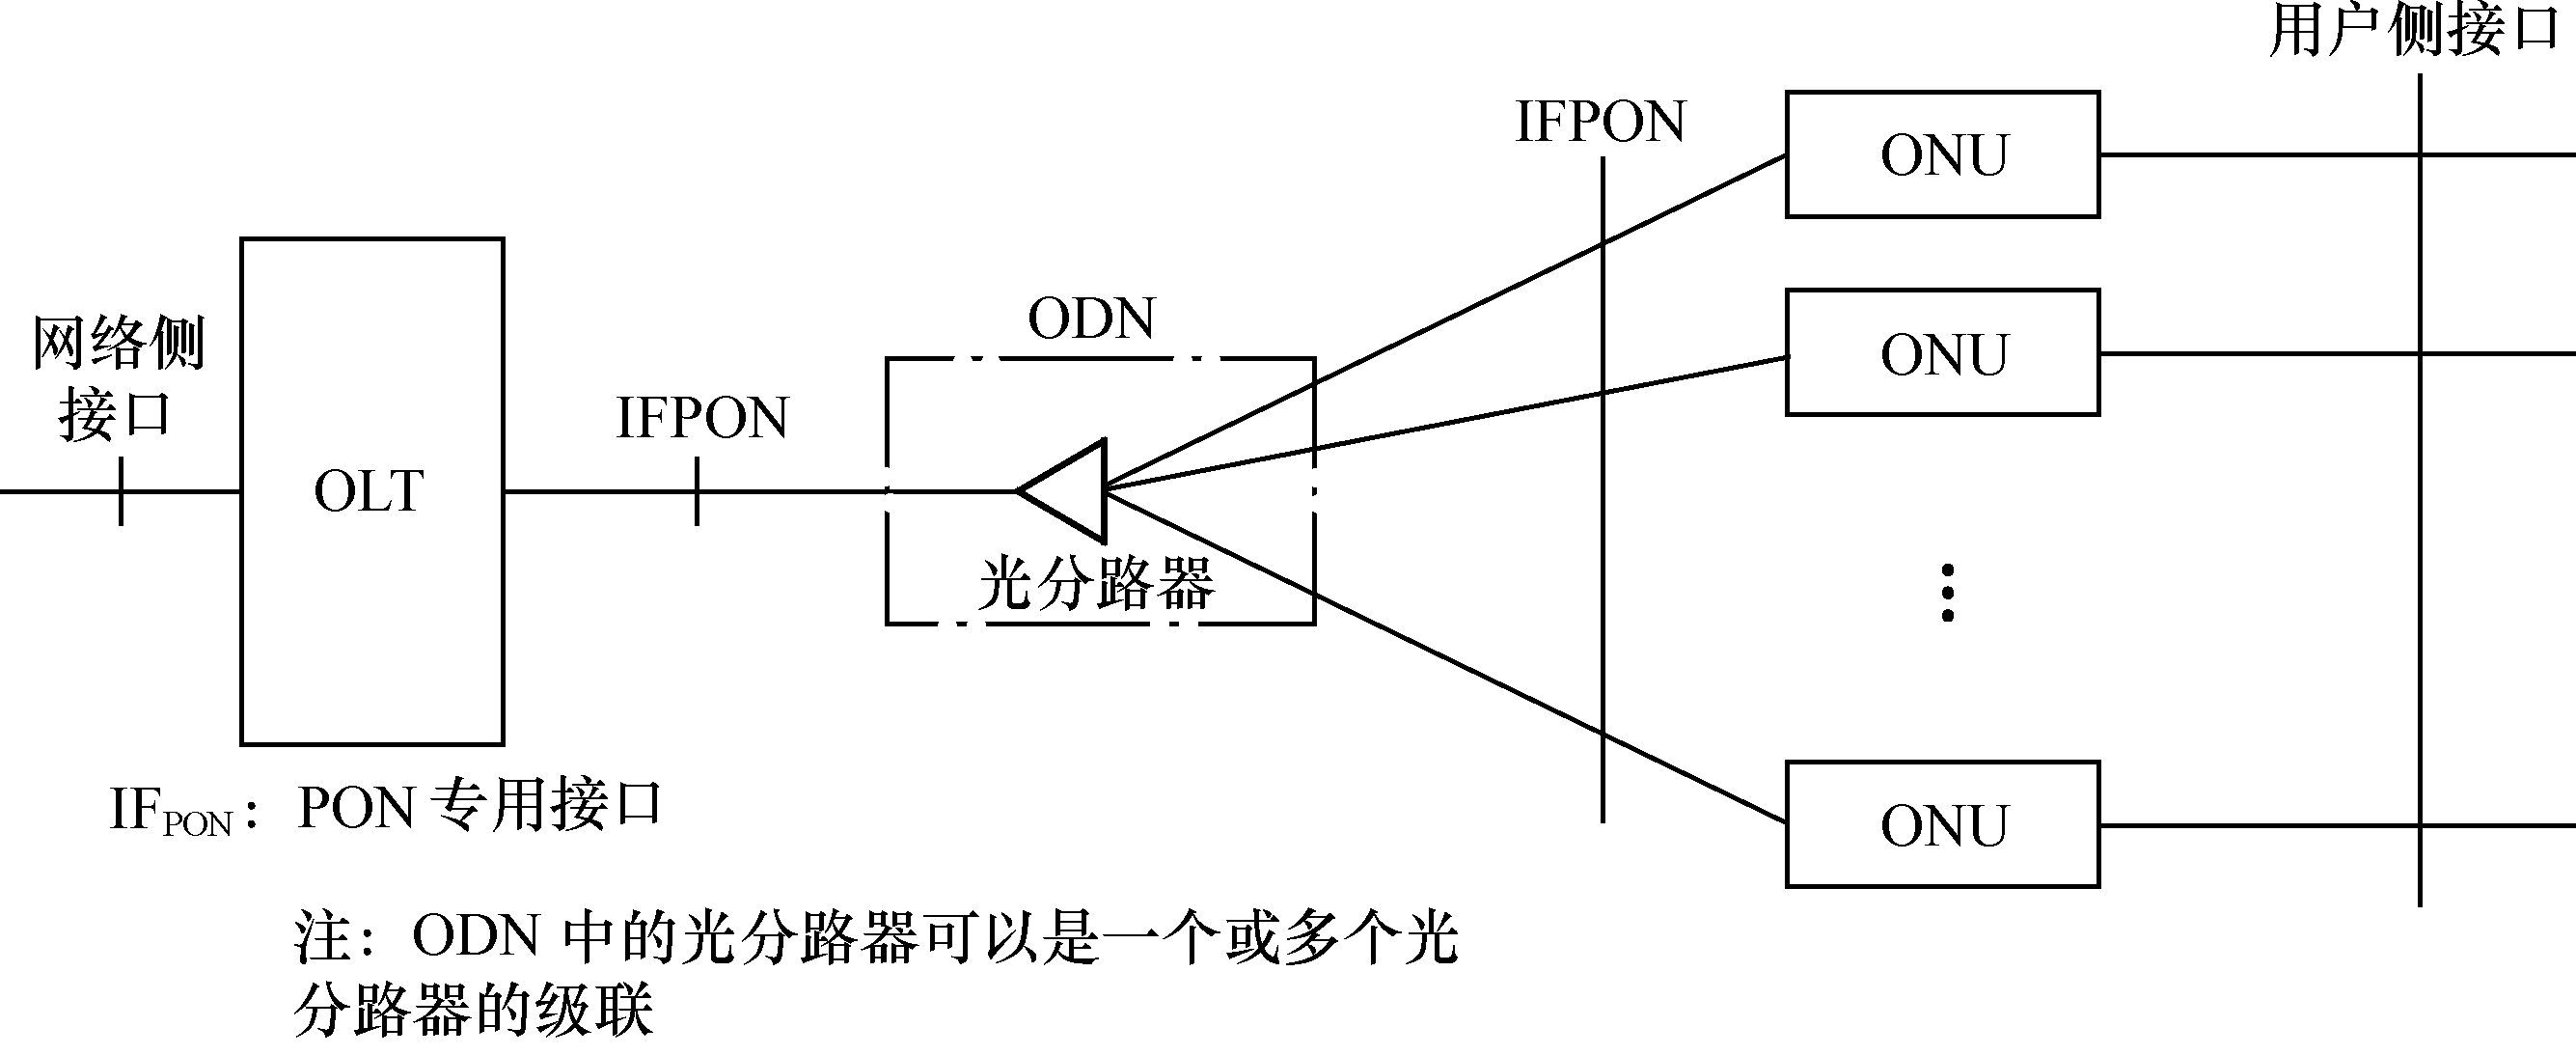 圖1.11  PON系統參考結構